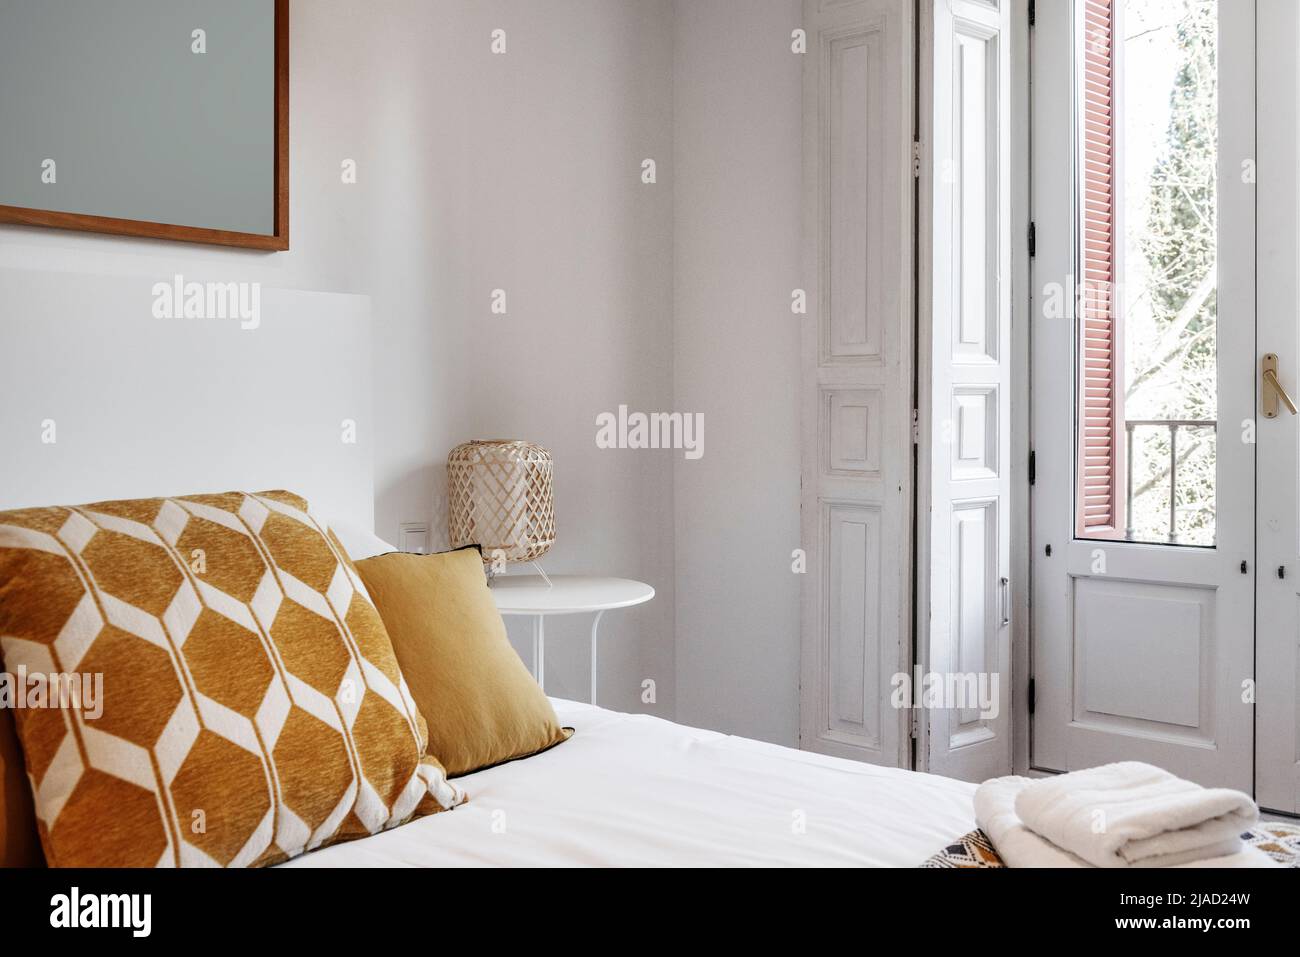 Kopfteil in einem Schlafzimmer mit orangefarbenen Kissen, sauberen weißen Handtüchern und einem Balkon mit Fenstern und weißen Fensterläden aus Holz Stockfoto